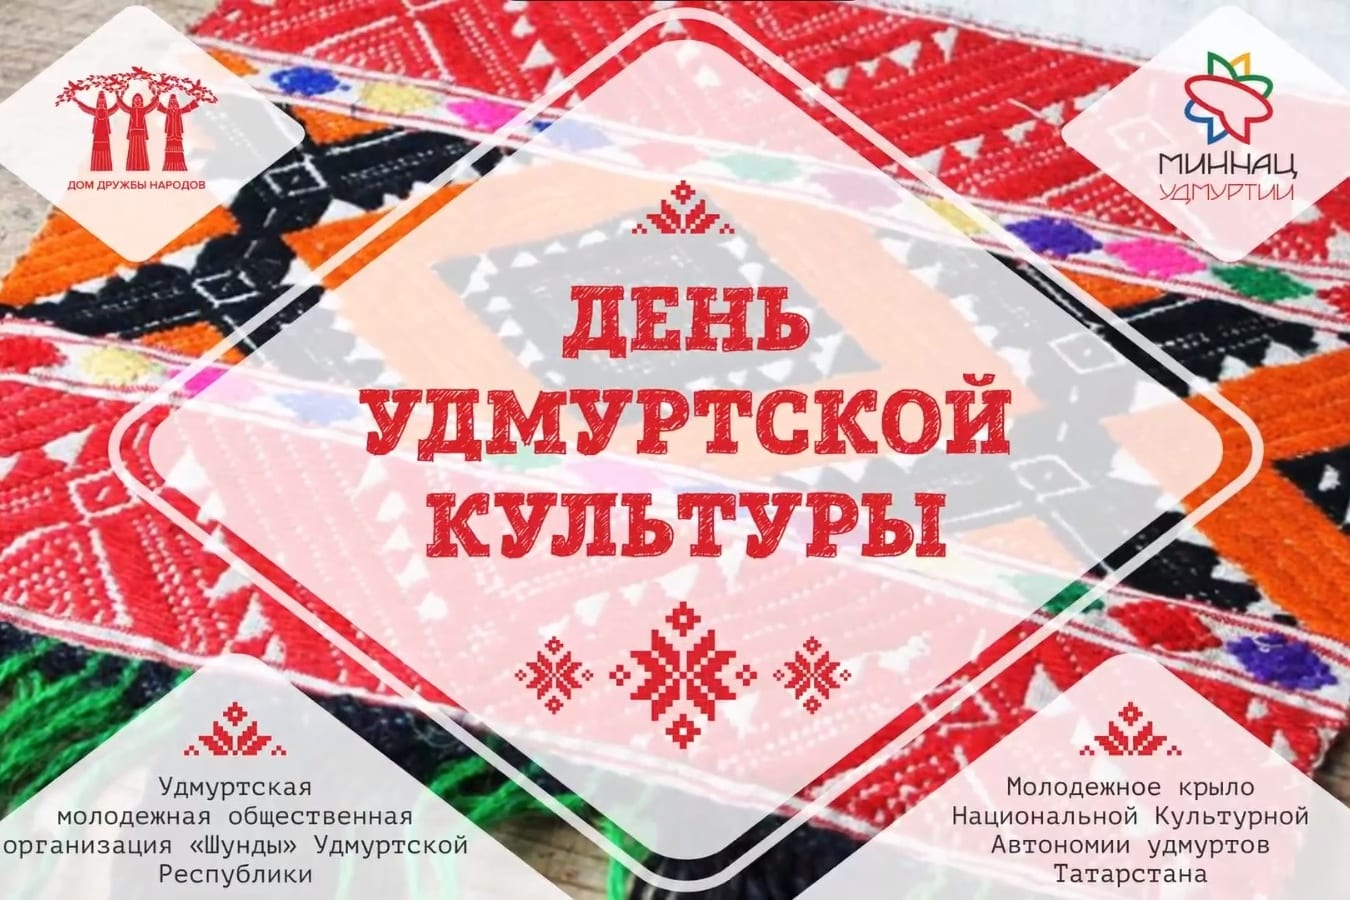 Дом дружбы народов запустил онлайн-проект "дни национальных культур" 1